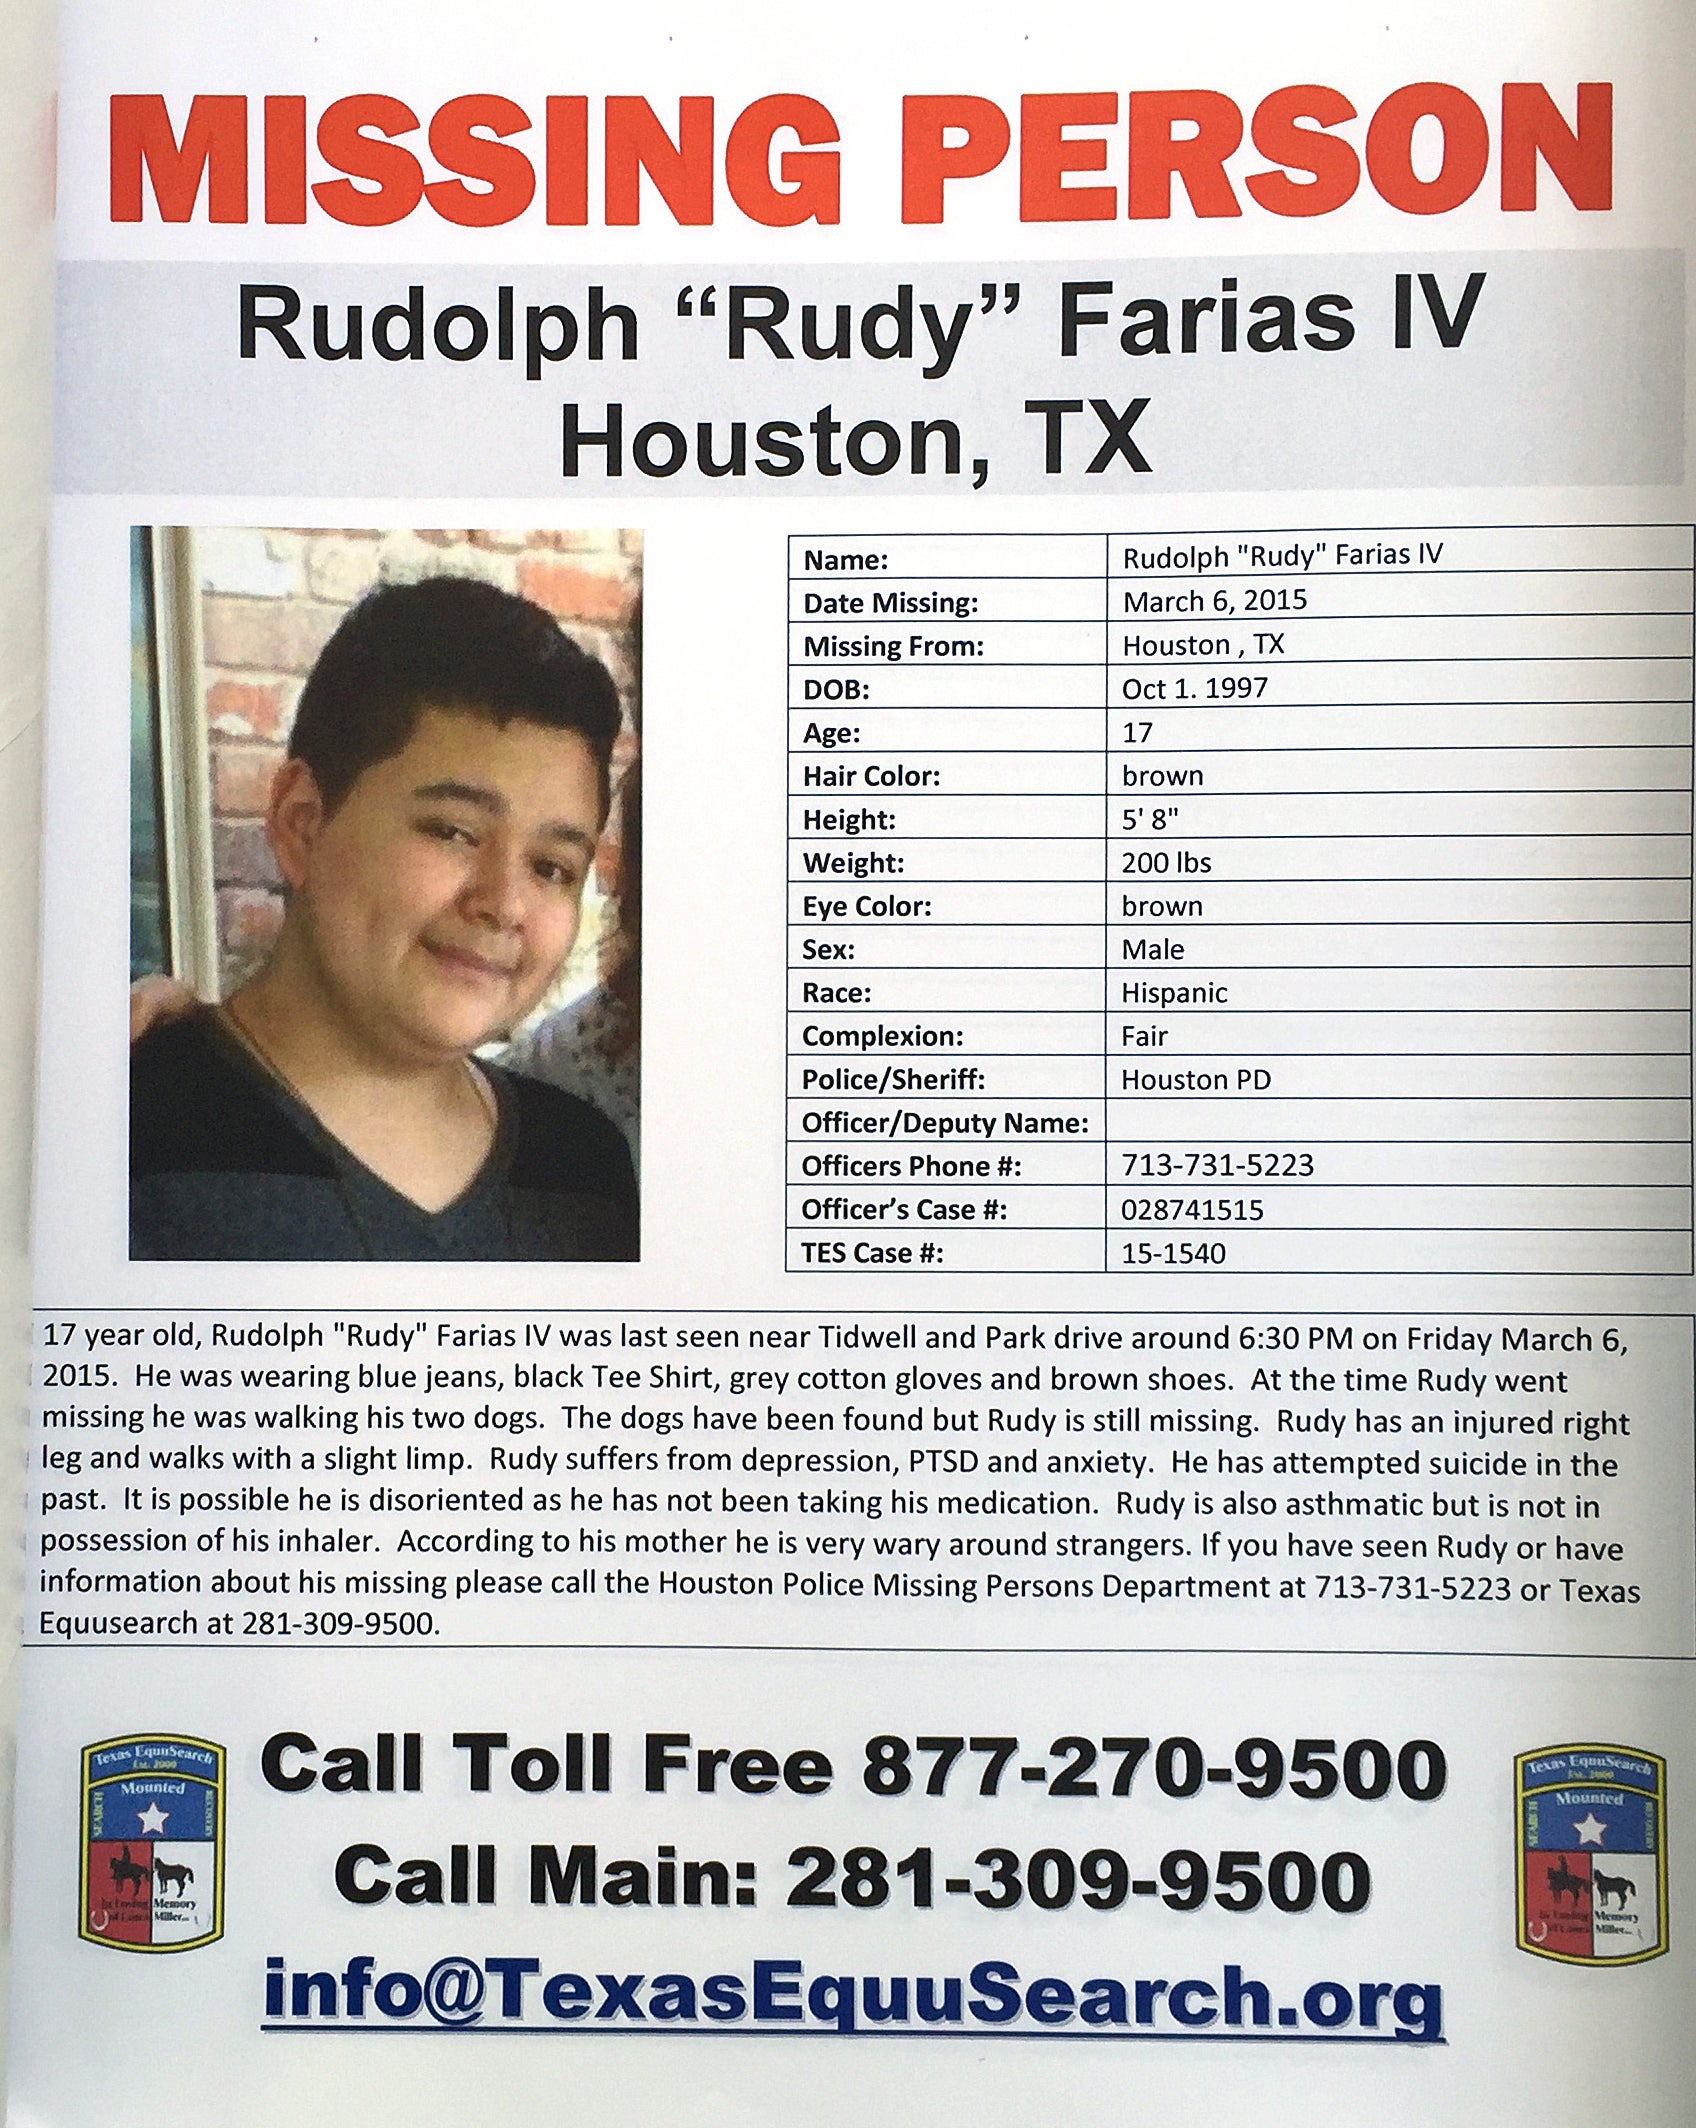 Cartel de la desaparición de Rudolph “Rudy” Farias IV. Farias desapareció el 6 de marzo de 2015 y fue encontrado durante el fin de semana